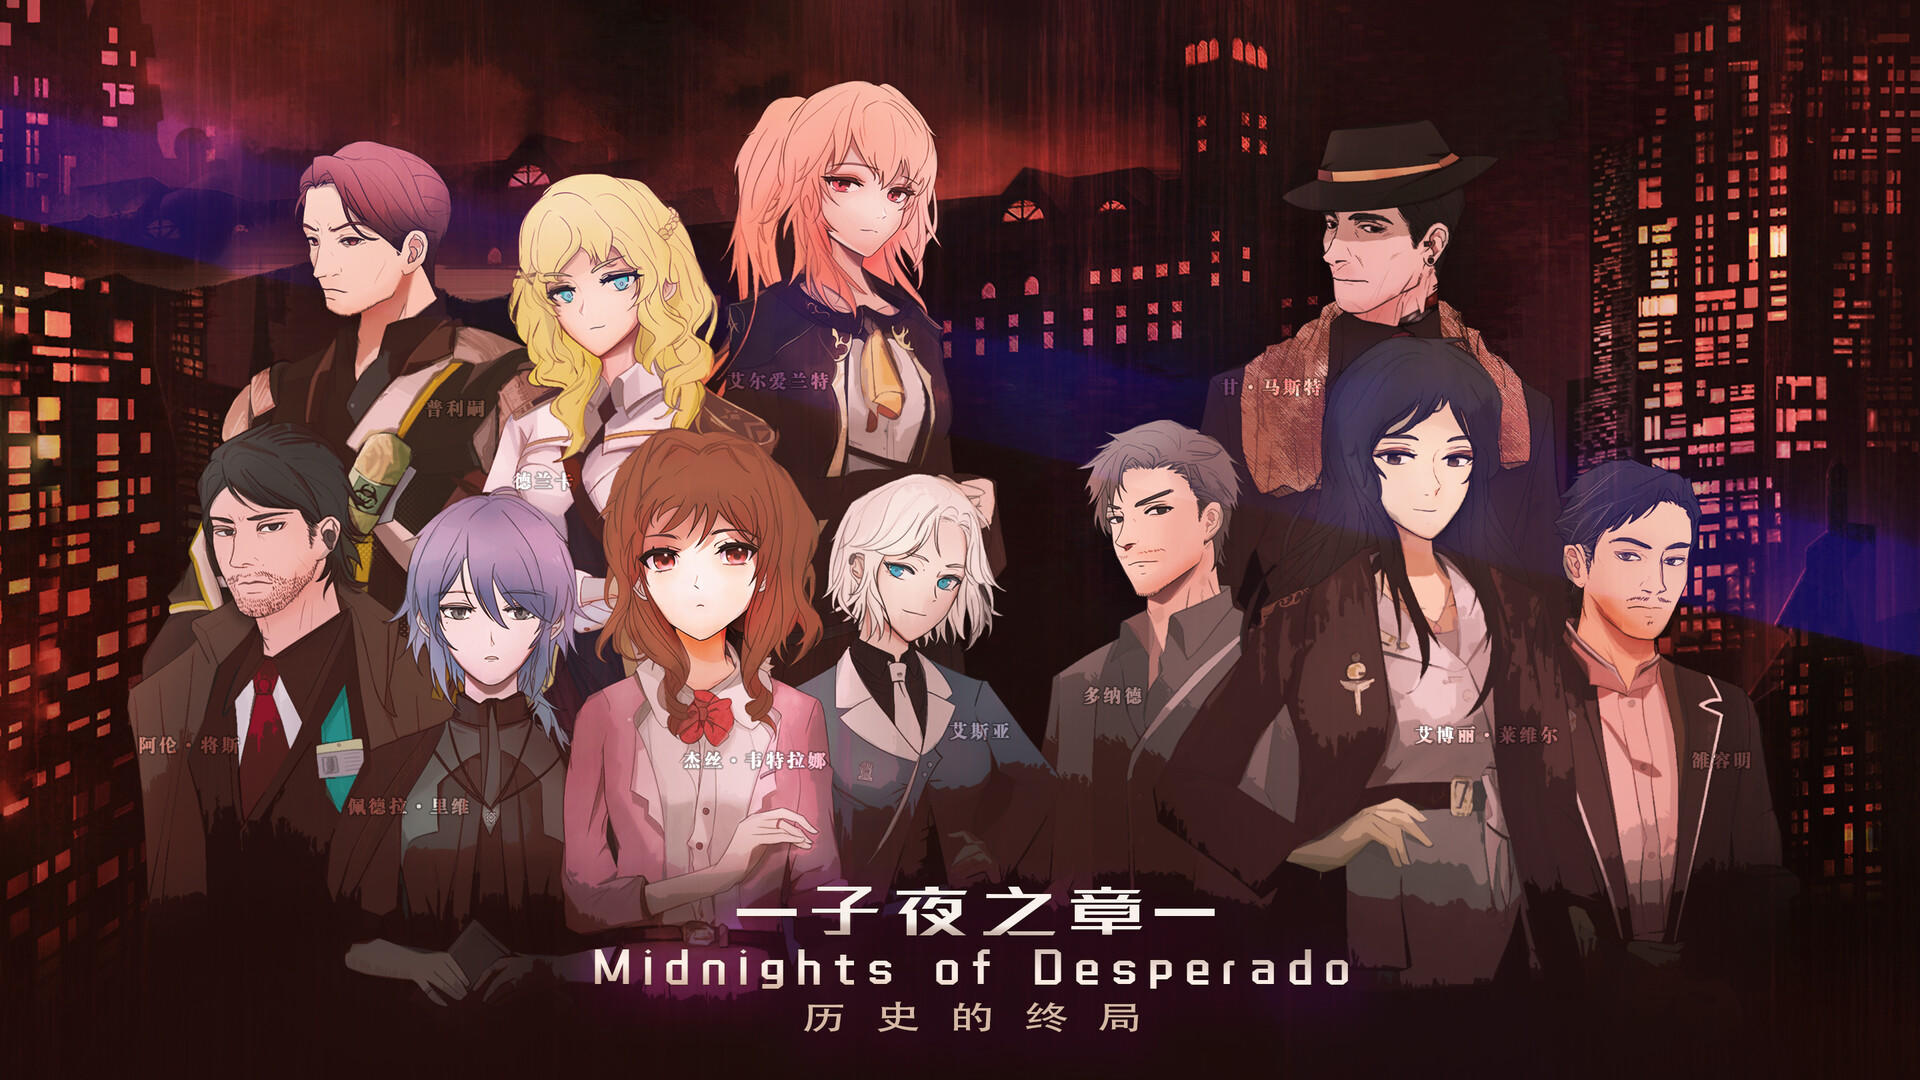 Screenshot 1 of ជំពូកពាក់កណ្តាលអធ្រាត្រ៖ ចុងបញ្ចប់នៃប្រវត្តិសាស្ត្រ～ MidNights of Desperado～ 